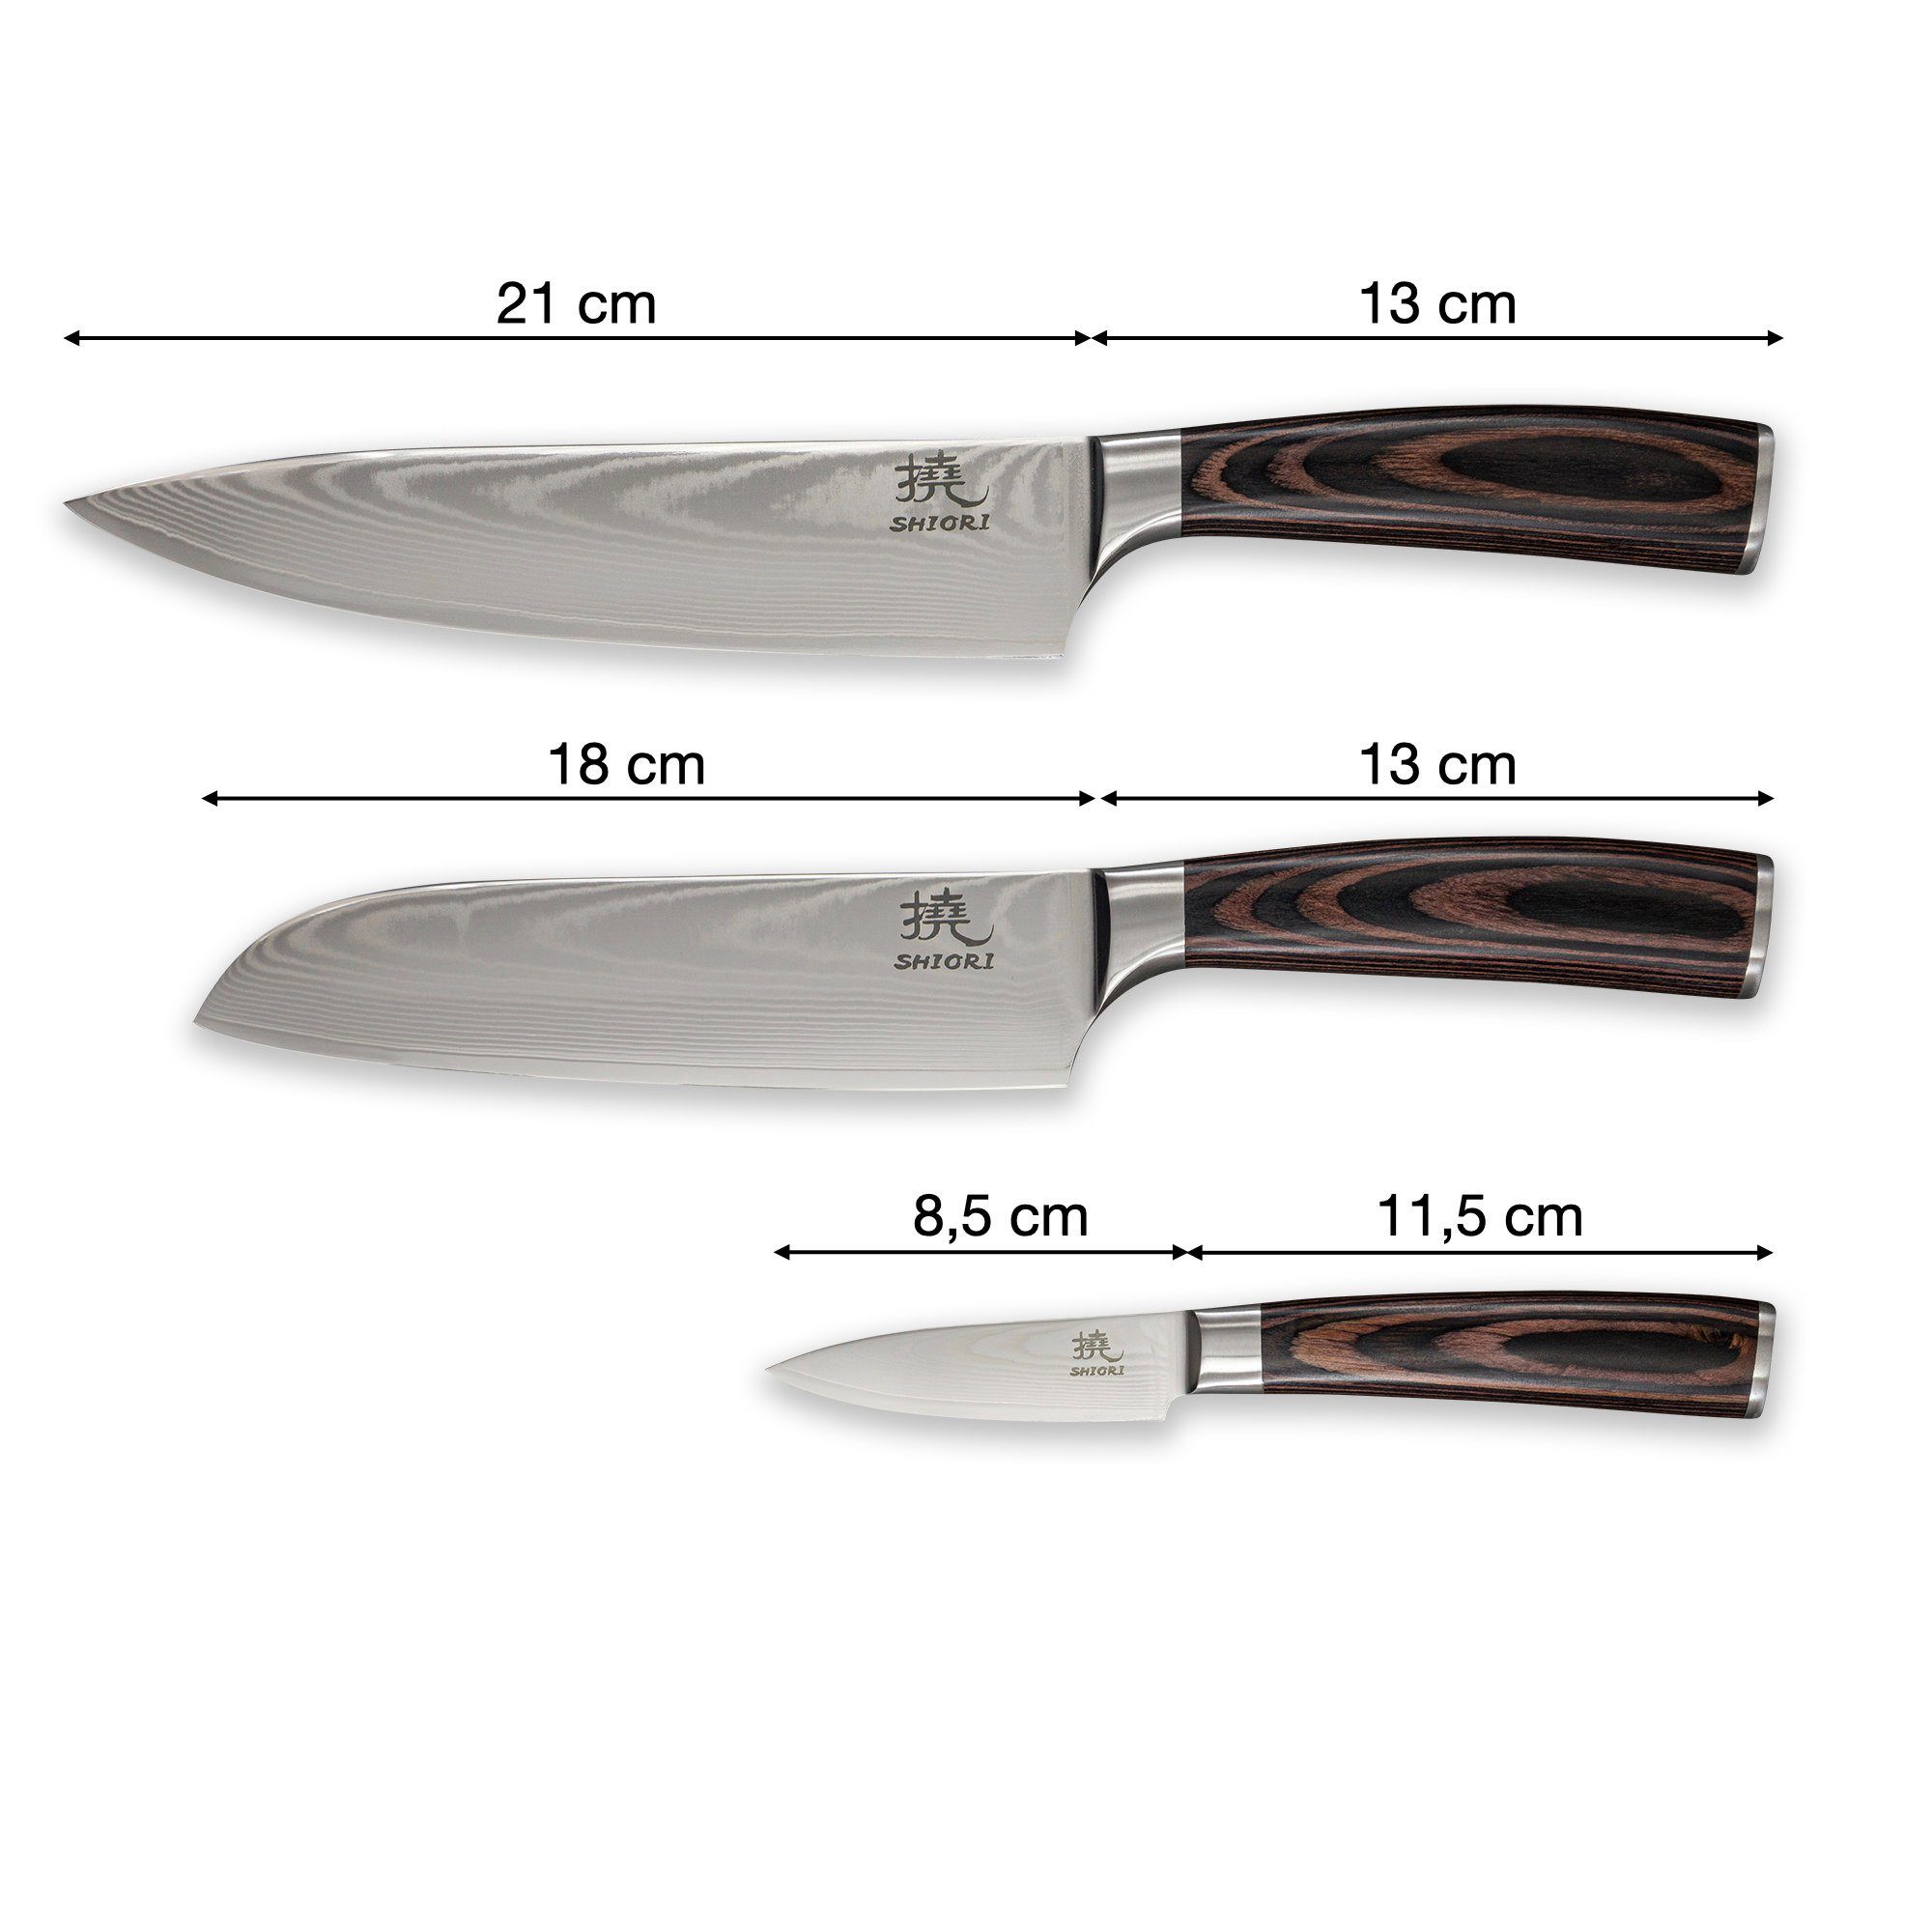 21, & mit cm Set 3 Shiori Messern Klingenlängen 18 Damastmesser, 8,5 -